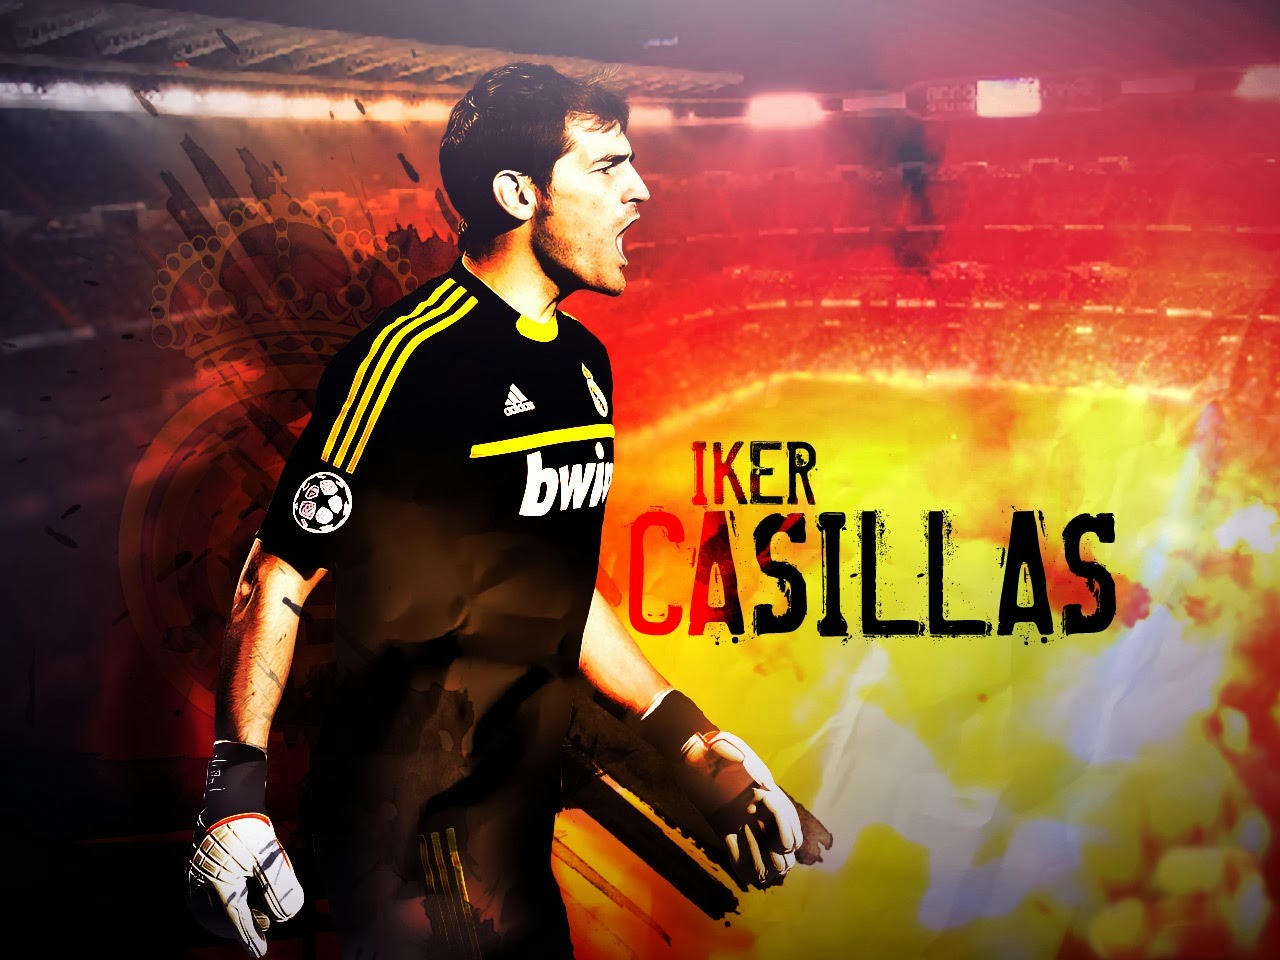 Iker Casillas HD Wallpapers | HDWallpapers360.com - High Definition ...